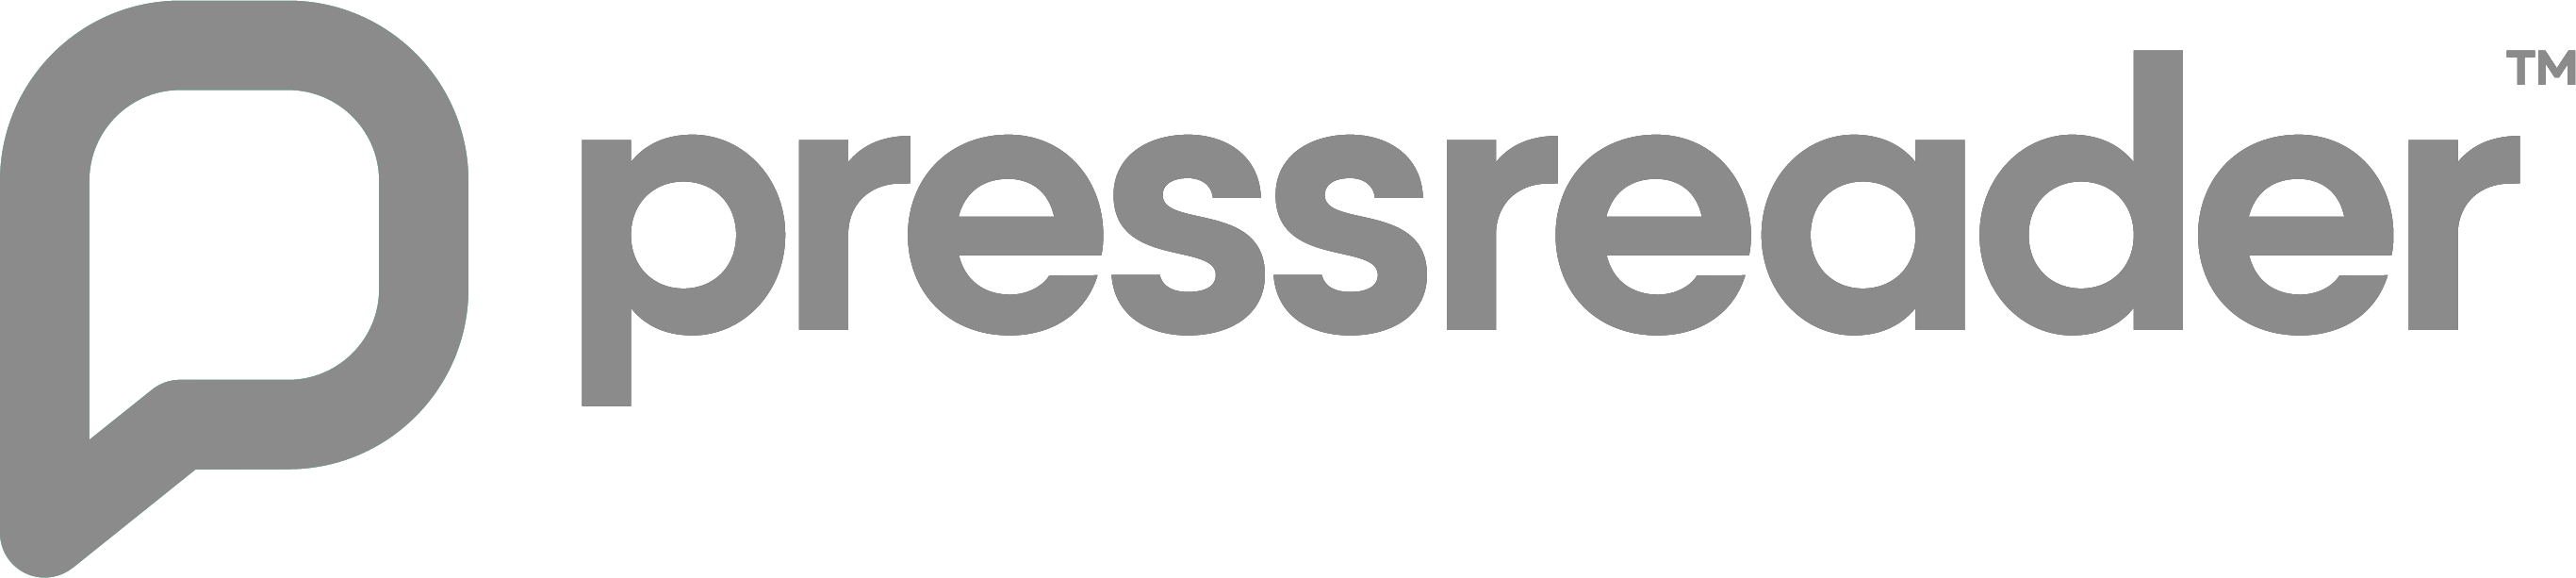 pressreader-logo-1